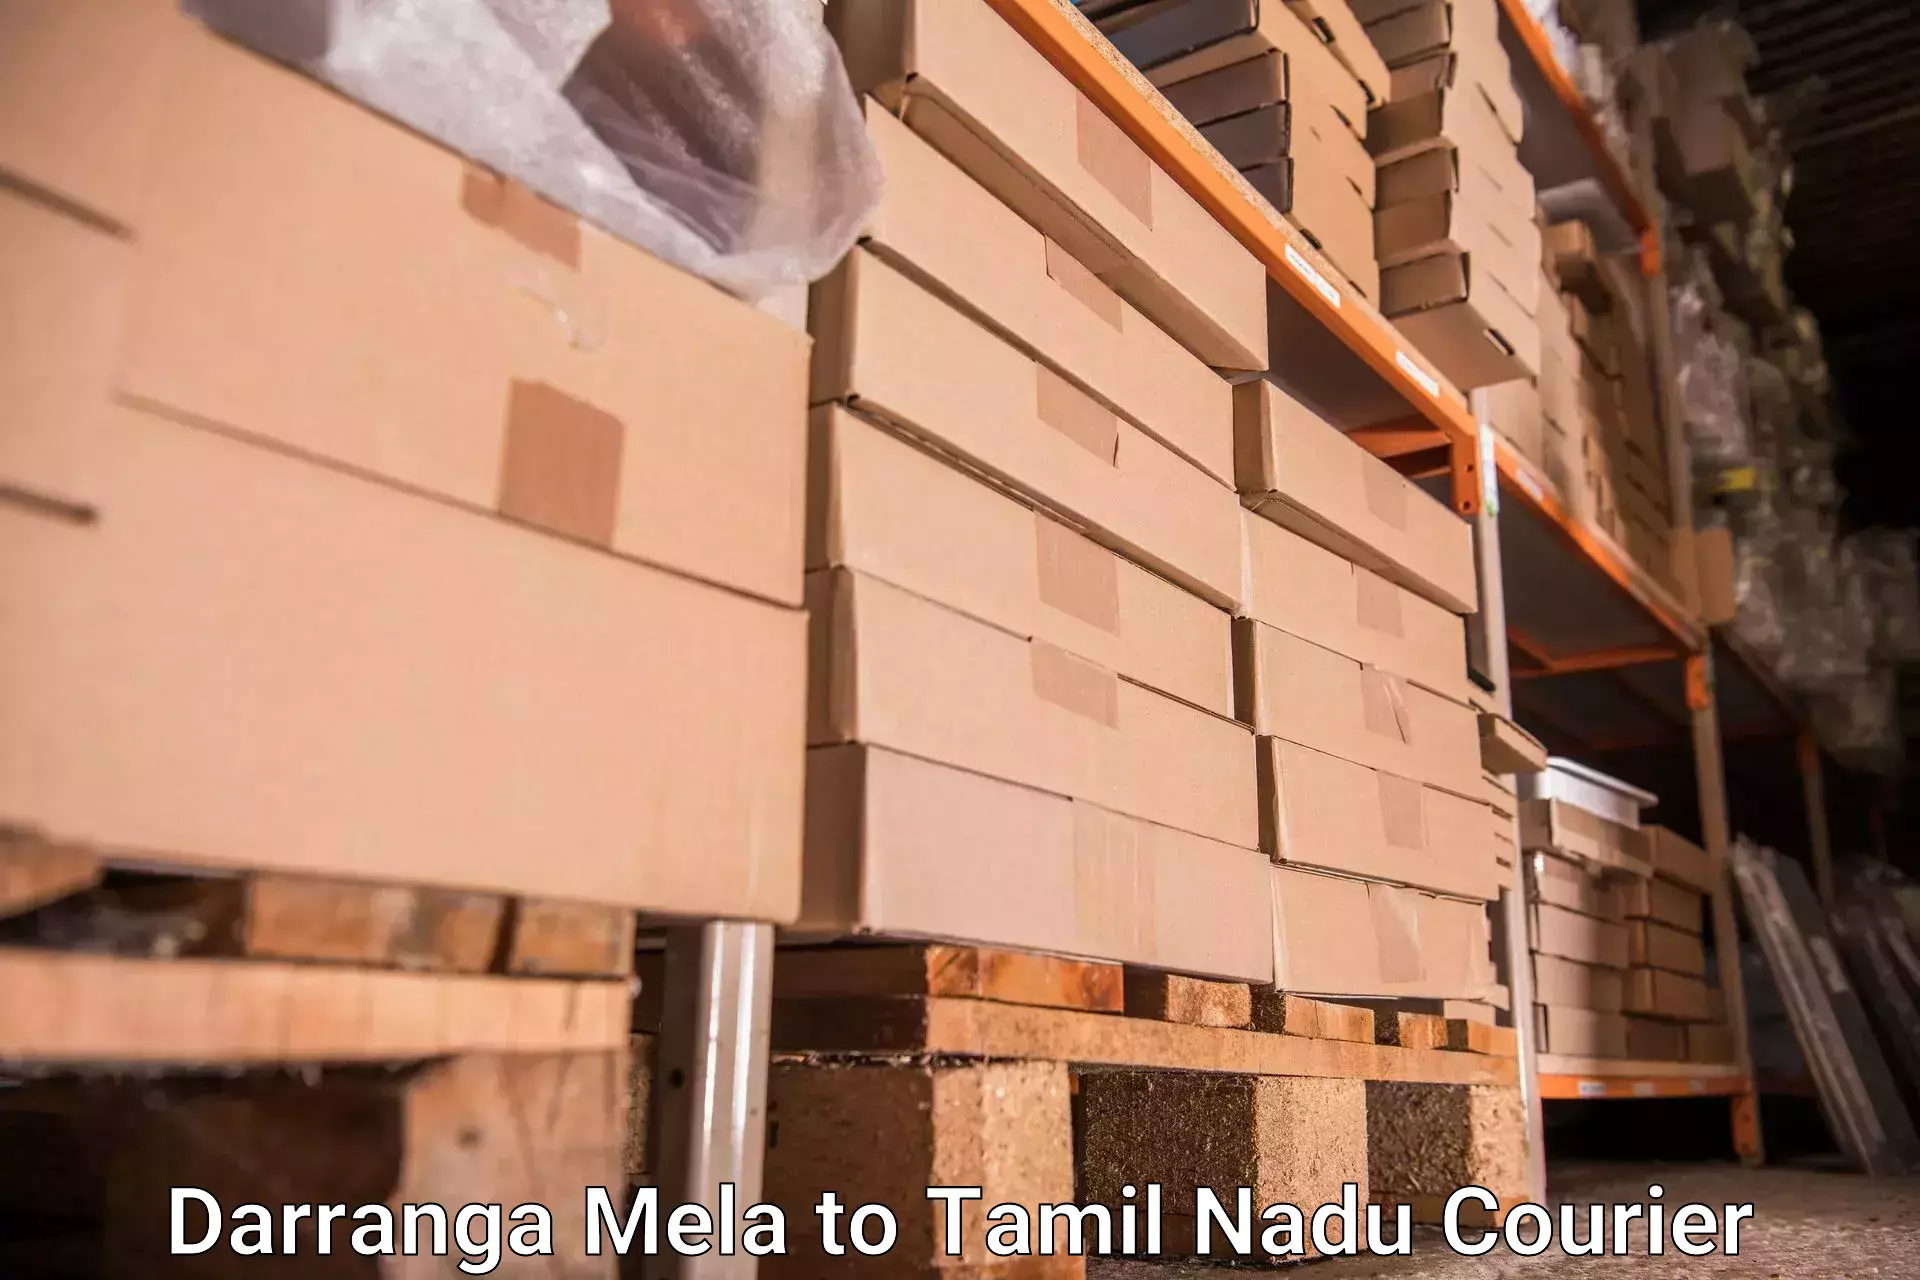 Online luggage shipping Darranga Mela to Anthiyur